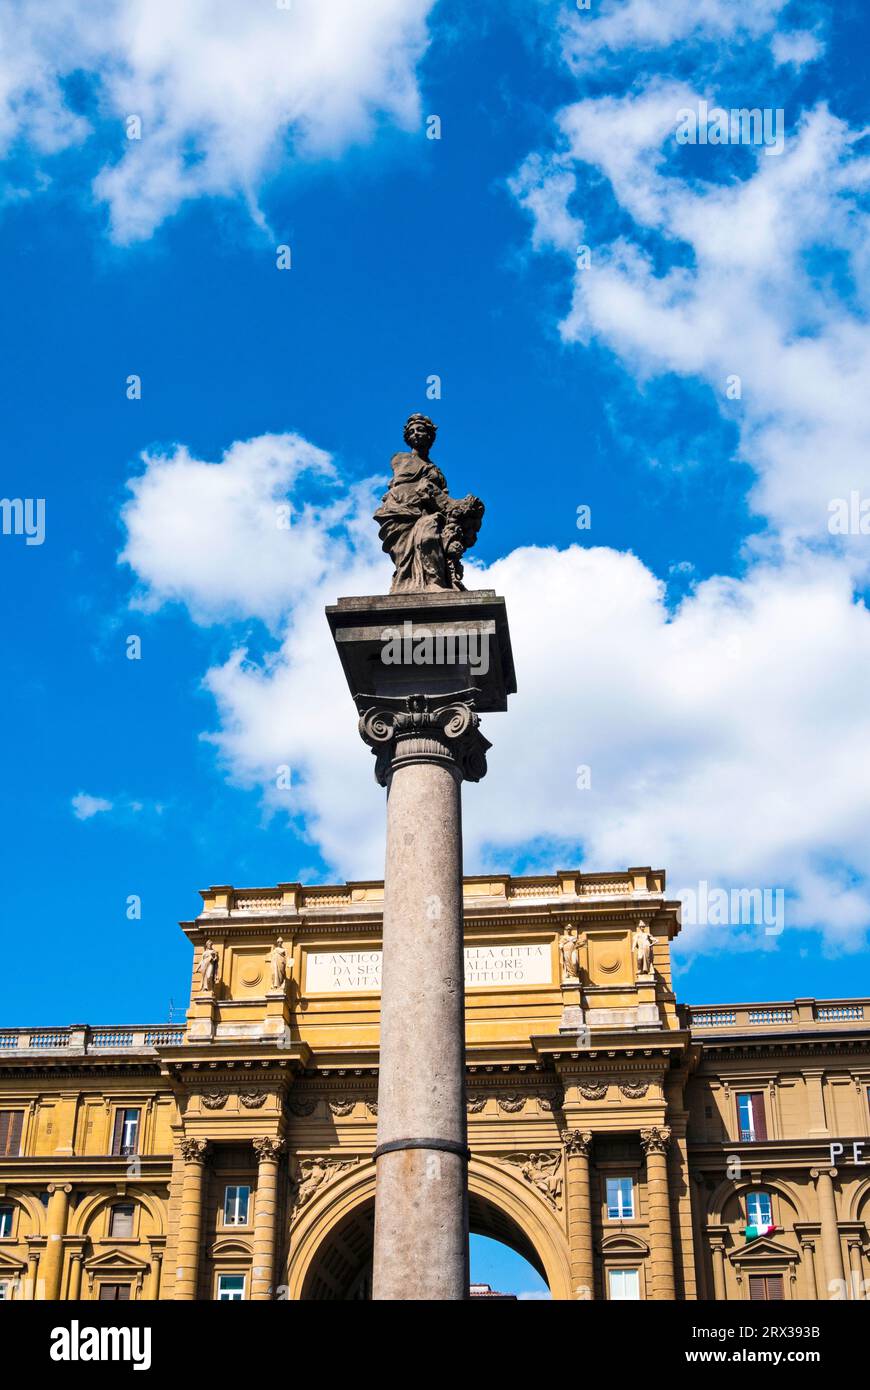 Colonna dell'abbondanza, Piazza della Repubblica, Florence, Tuscany, Italy Stock Photo